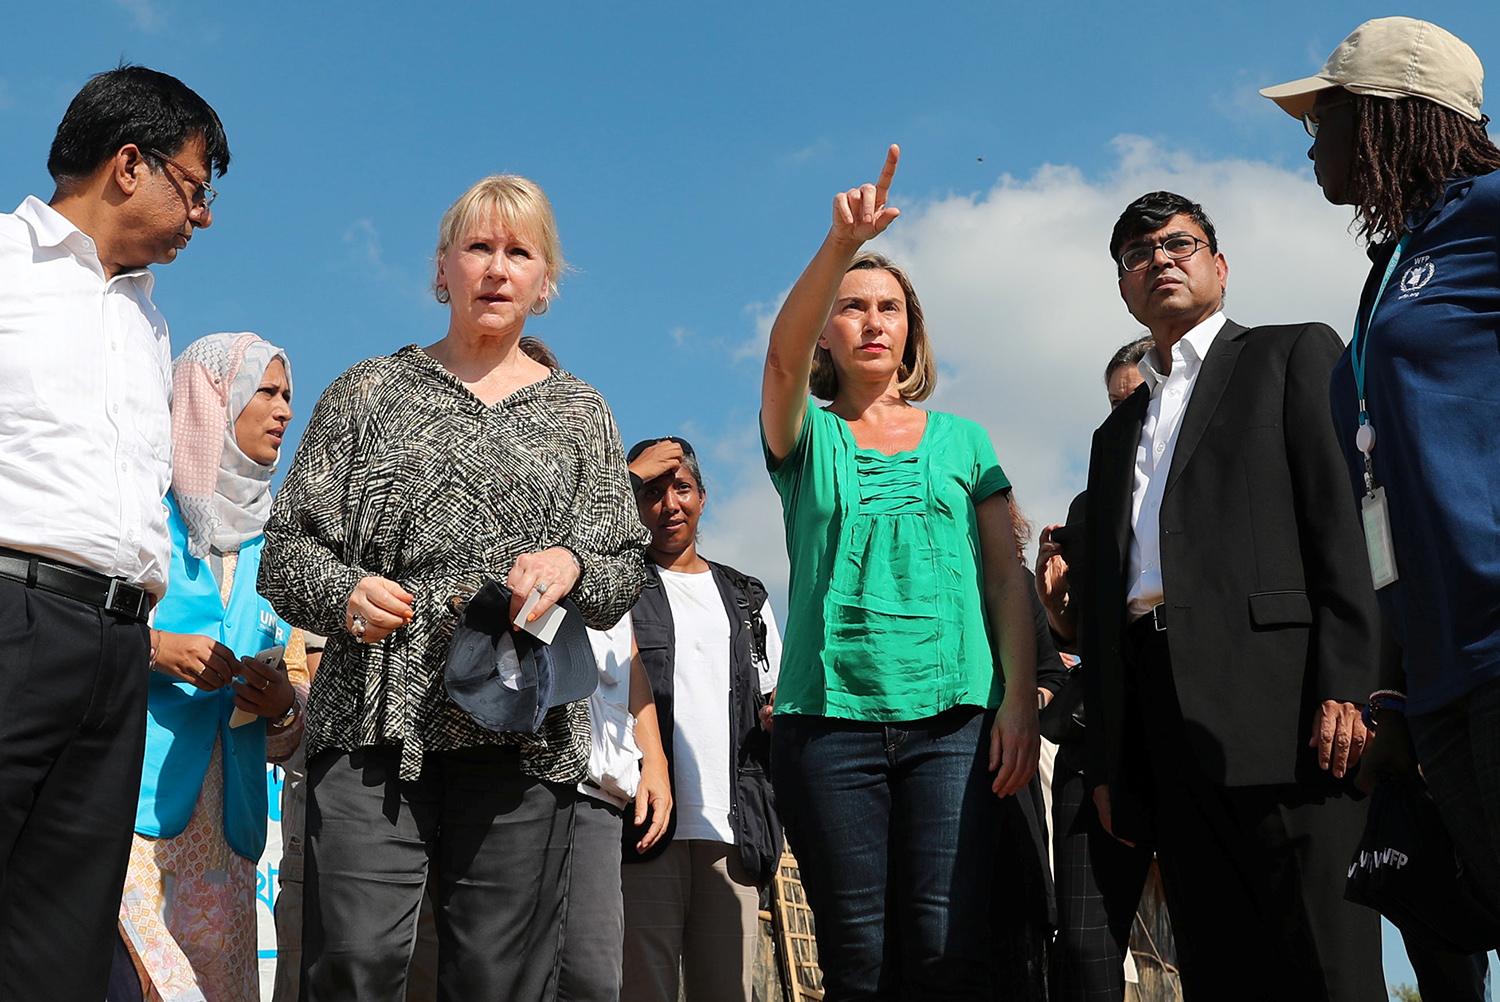 Utrikesminister Margot Wallström och EU:s representant för säkerhetspolitik och utrikesfrågor, Federica Mogherini, besöker ett flyktingläger i Coxs Bazar, Bangladesh.